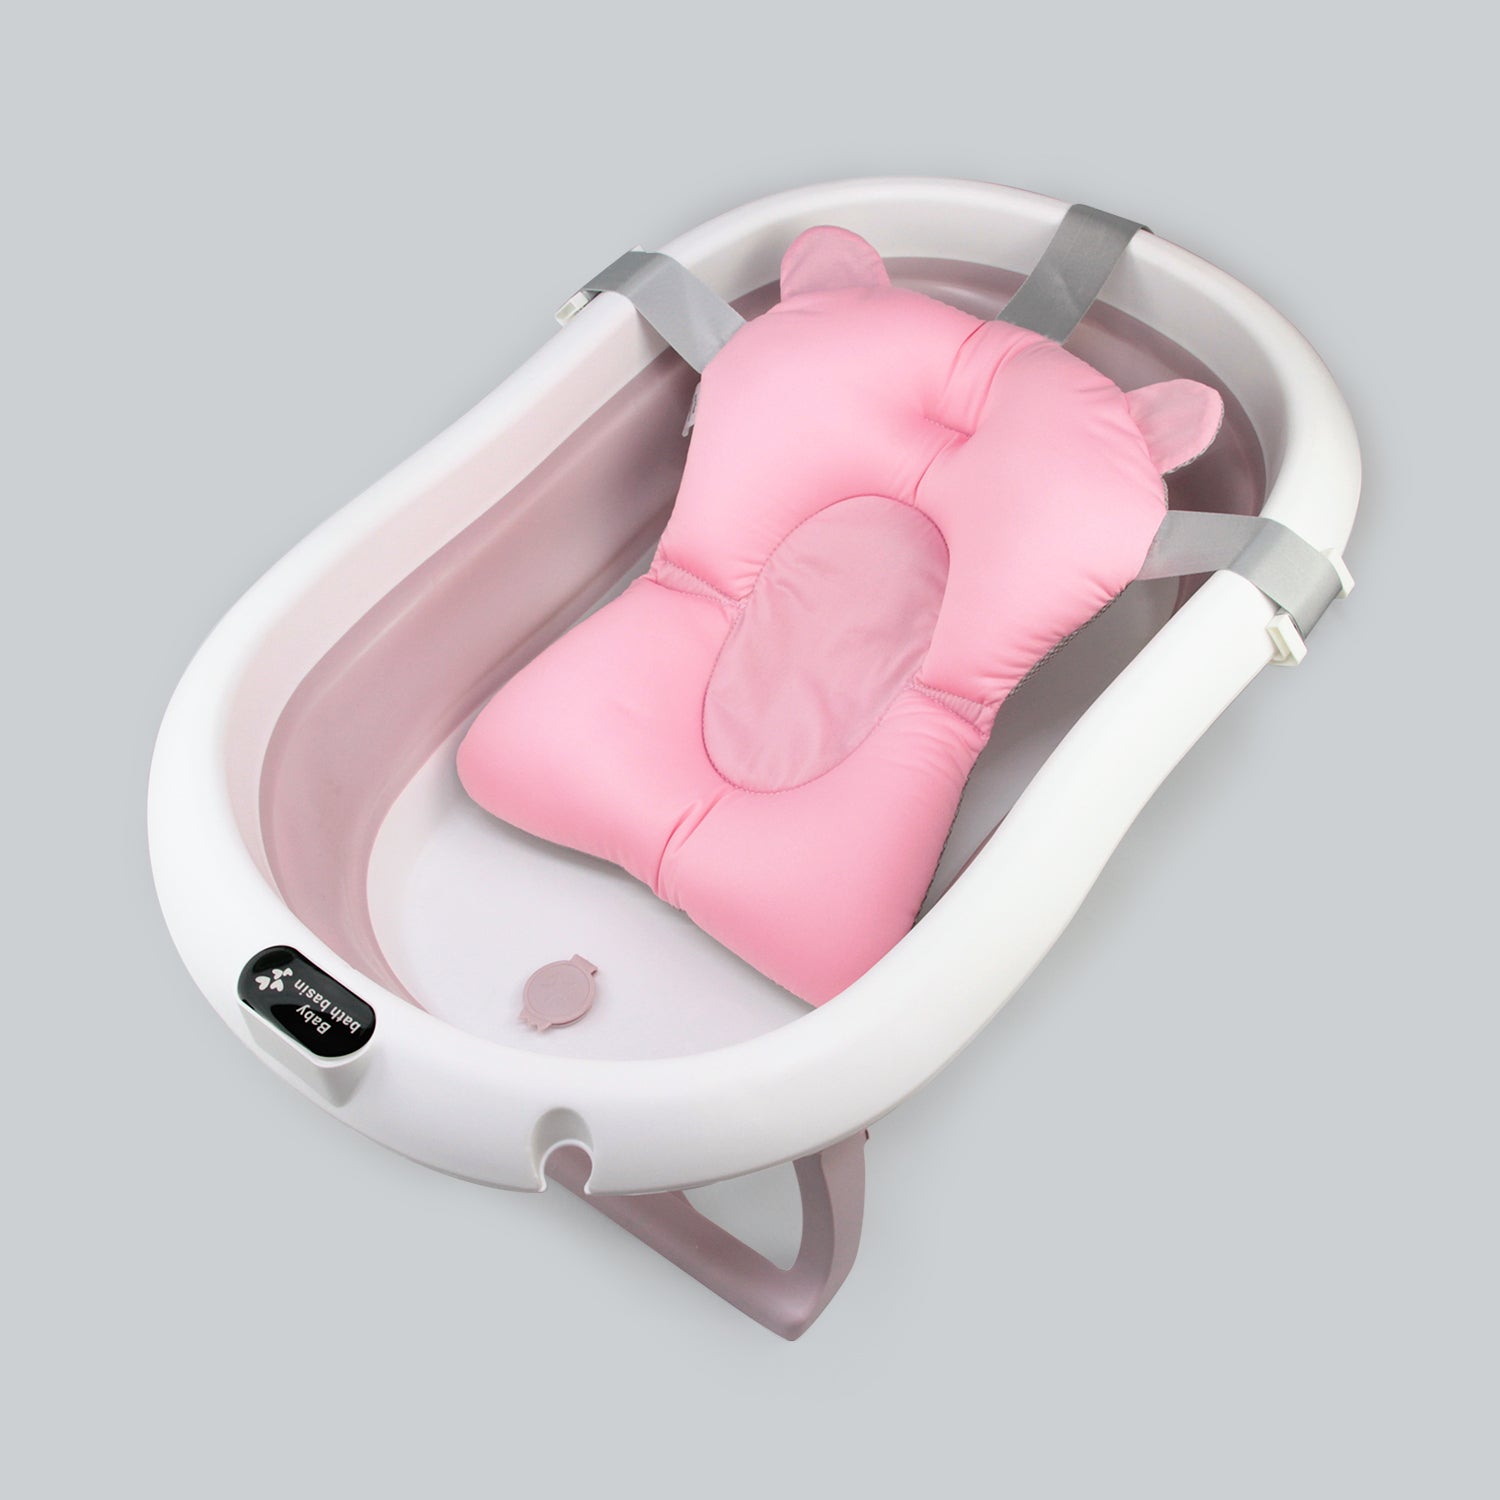 Bañera Plegable Pequeña Para Bebe. Rosa - ProductShop